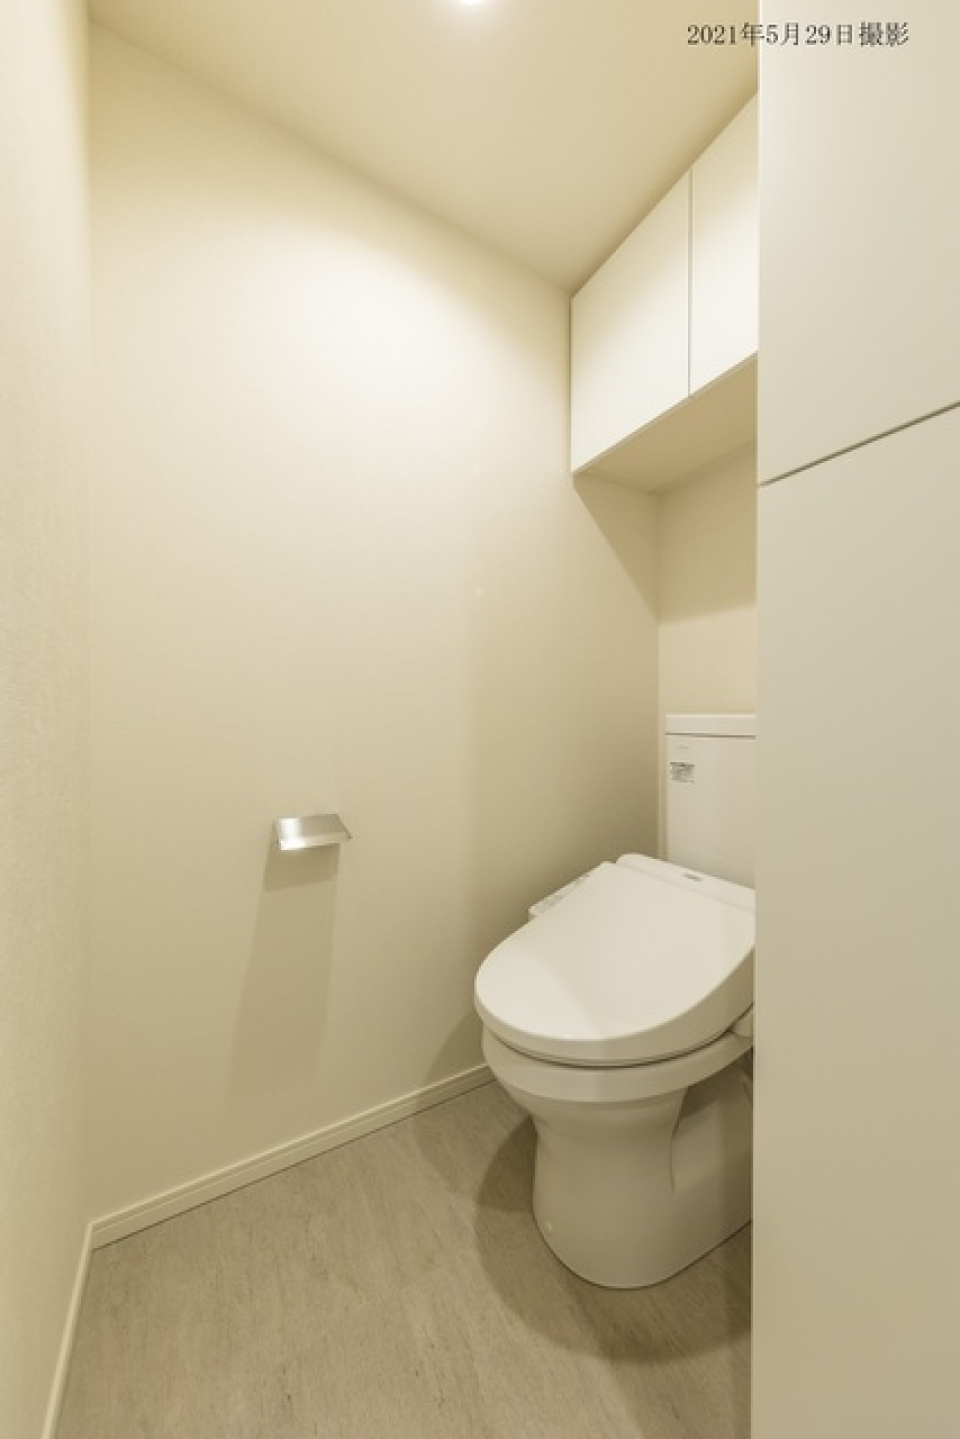 トイレには頭上に収納棚が付いています。
※写真は同タイプ住戸です。